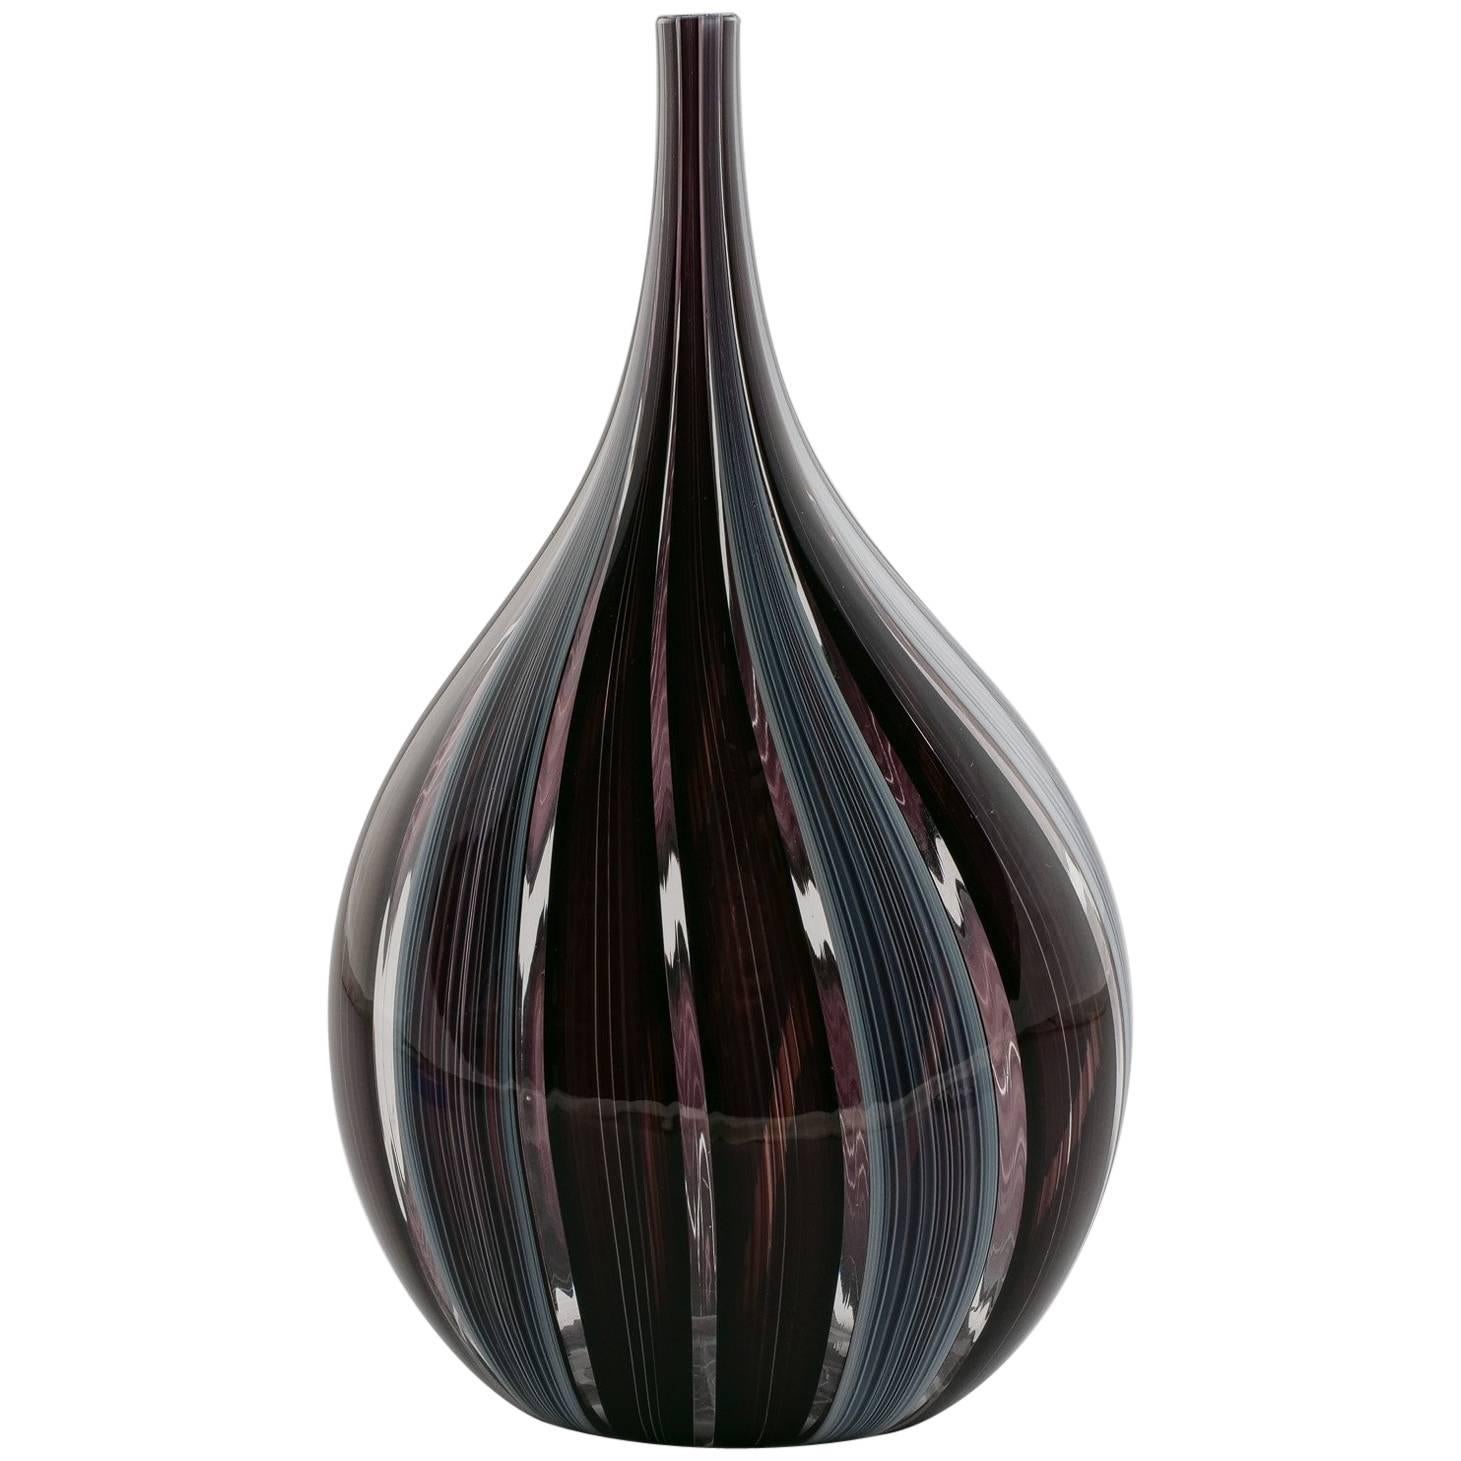 Adriano dalla Valentina Murano Glass Vase with Slender Neck